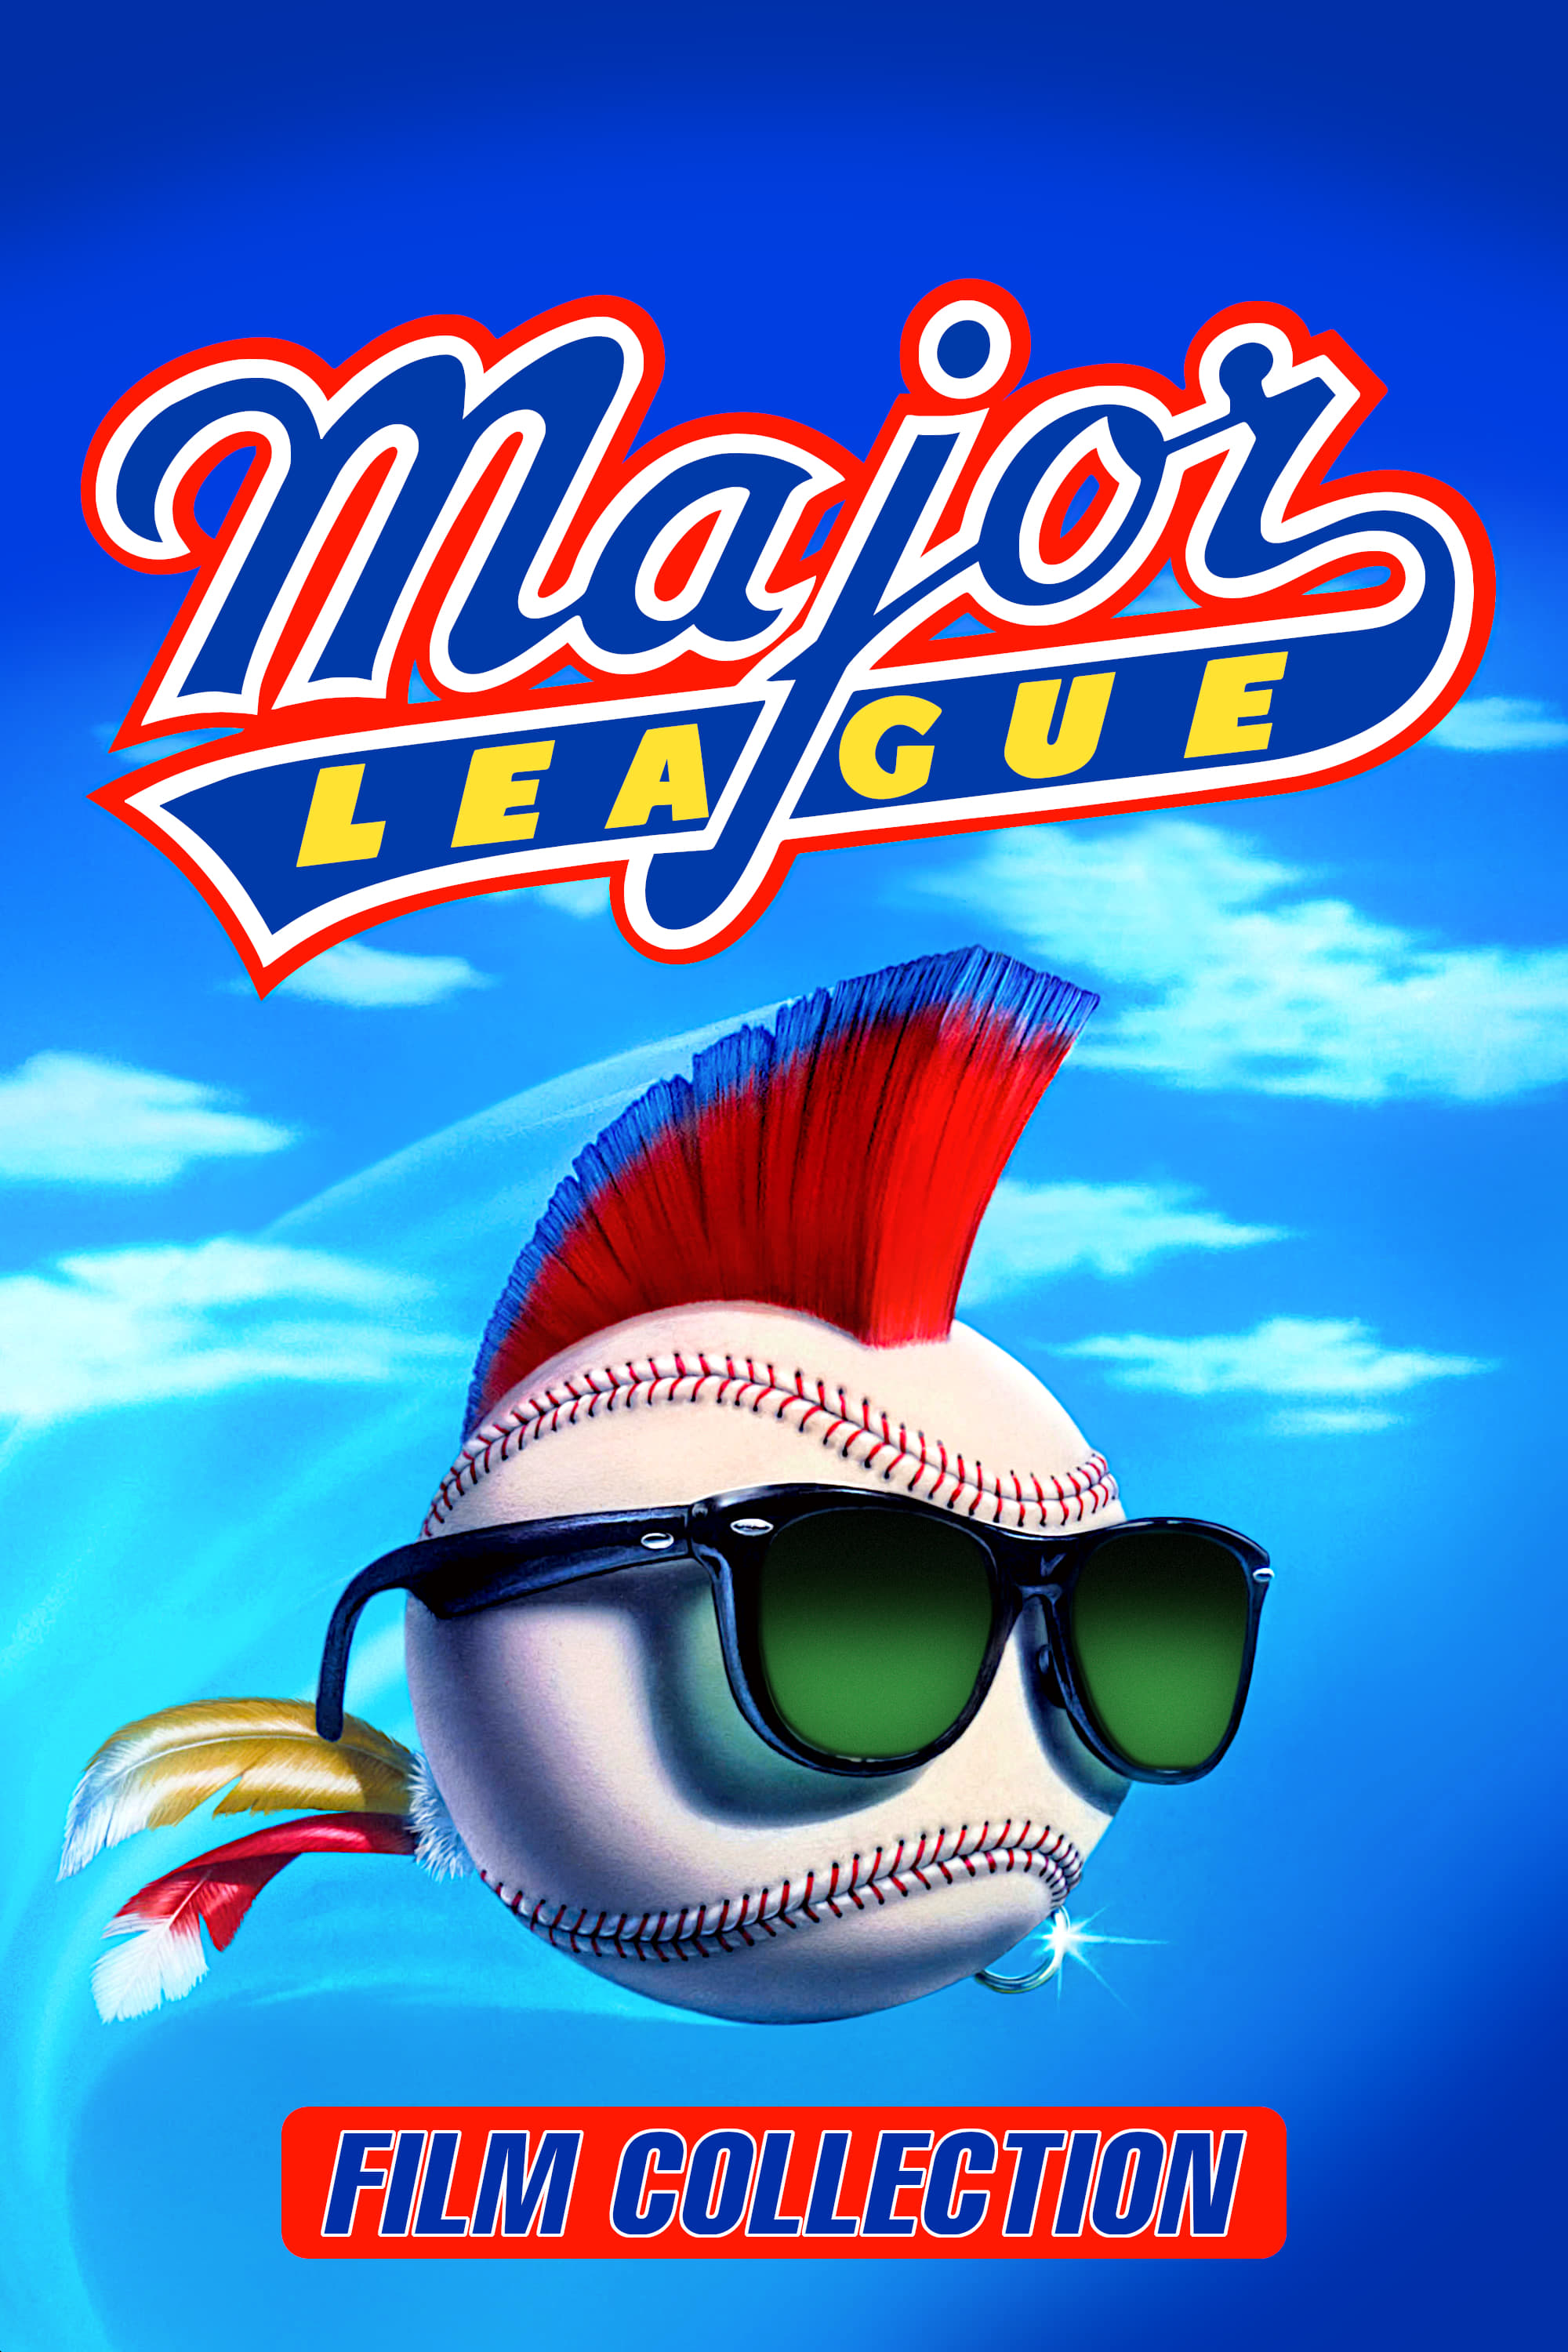 Major League Collection